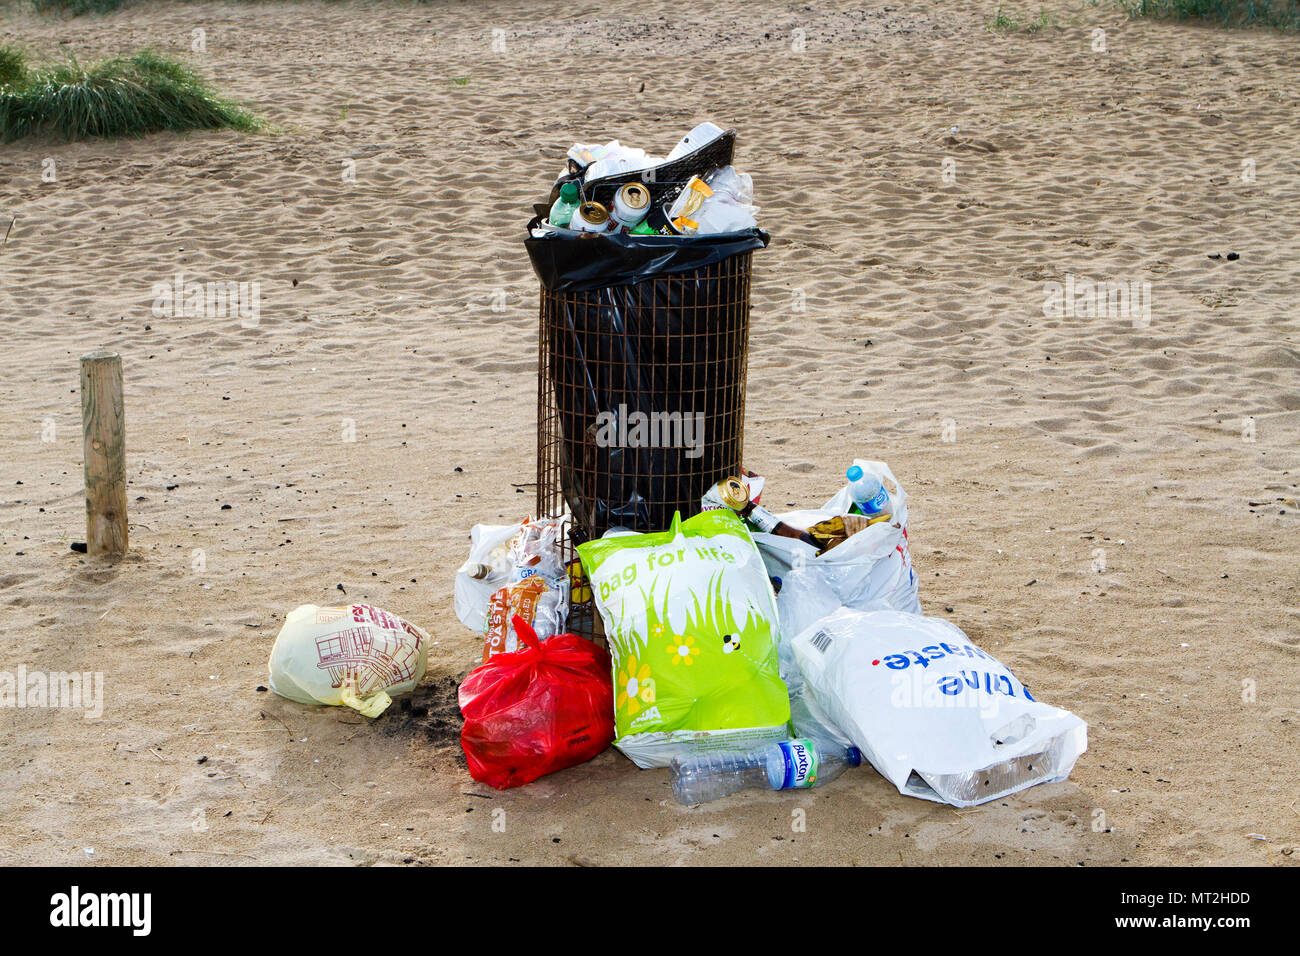 Plage sale, Southport, Merseyside. 28 mai 2018. Banque mondiale fêtards quittent les plages de Southport jonché d'ordures, jeté des barbecues et des canettes de bière vides. Les grains de beauté étaient couverts de détritus et de sacs de déchets étaient empilés à côté de poubelles débordent. De nombreux simplement laissé leurs déchets derrière après avoir des barbecues et des boissons en plein air - obligeant les escadrons de nettoyage de sauter dans l'action aujourd'hui. Alors que certains ont tenté d'effacer en plaçant leur litière près d'une poubelle, la nature sont encore entachés par des montagnes de déchets qui couve. Credit : Cernan Elias/Alamy Live News Banque D'Images